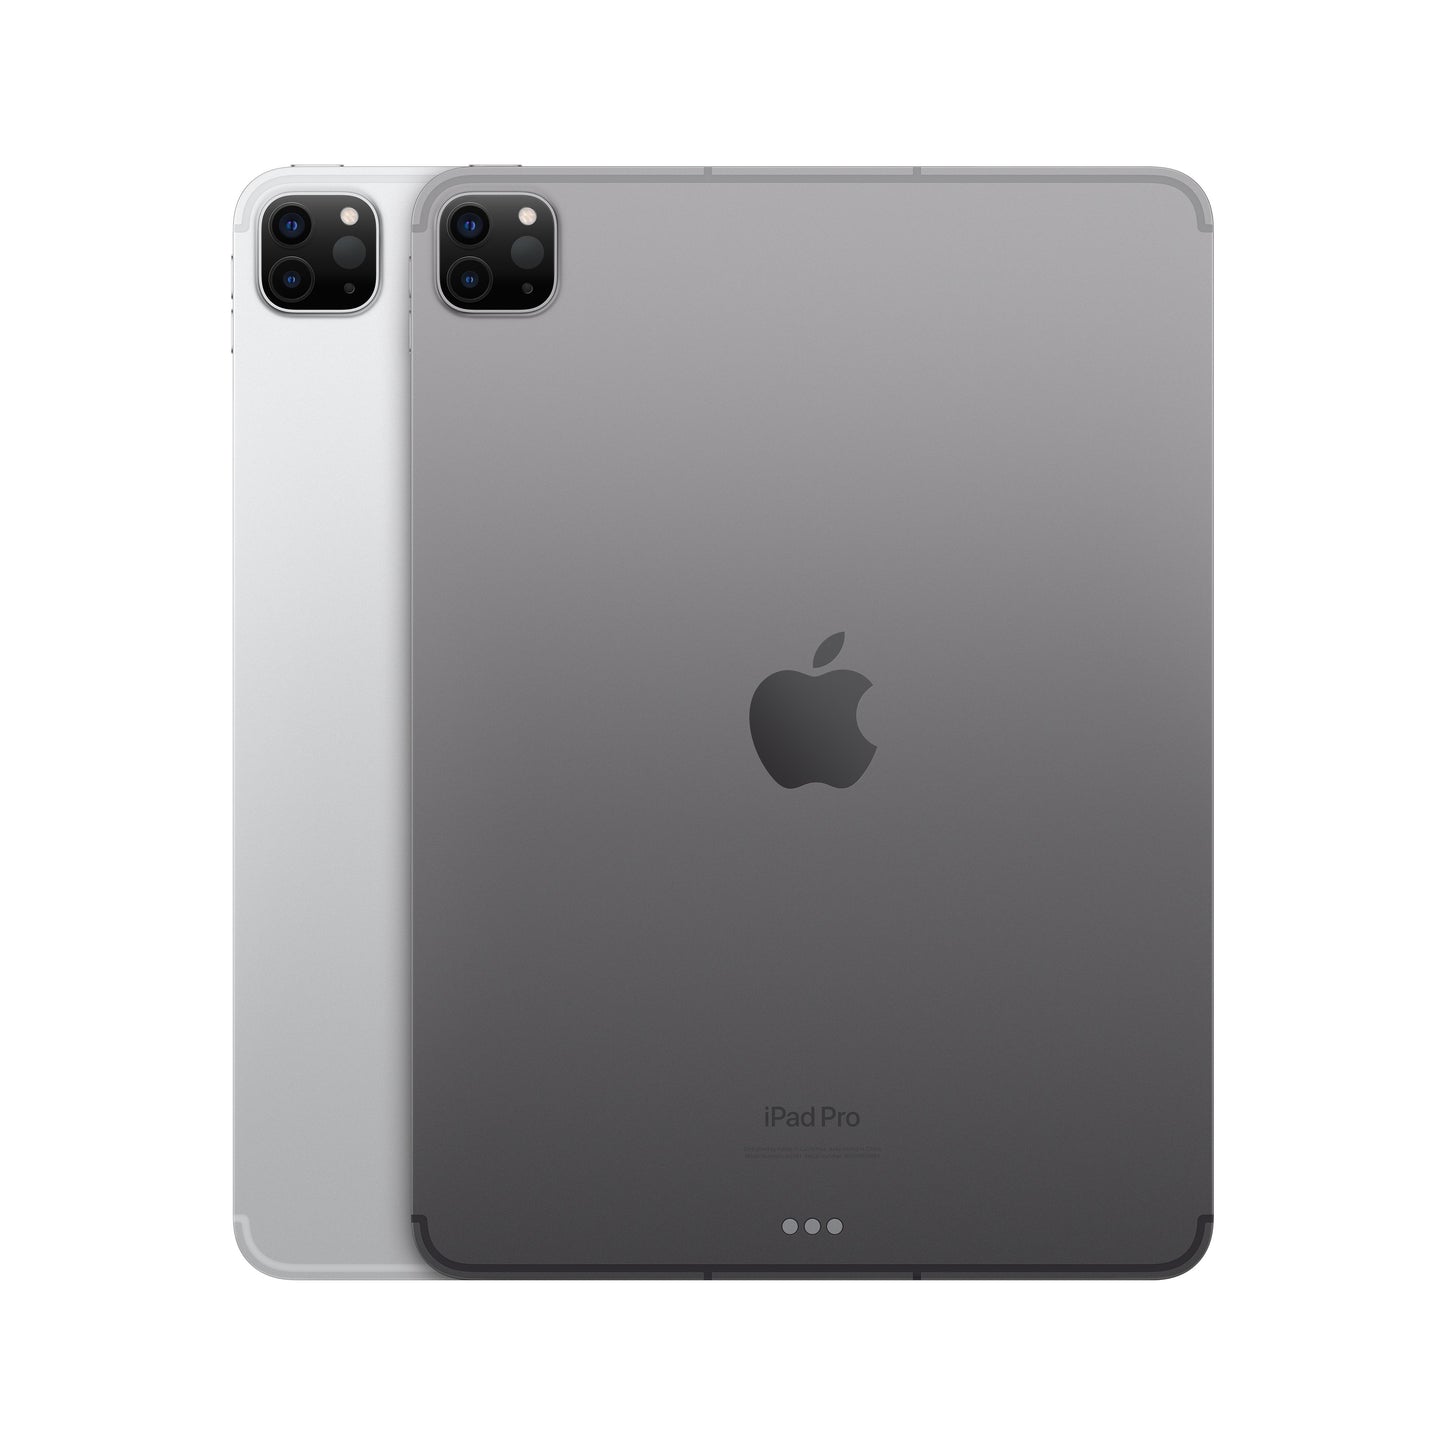 2022 11-inch iPad Pro Wi-Fi + Cellular 2TB - Space Grey (4th generation)